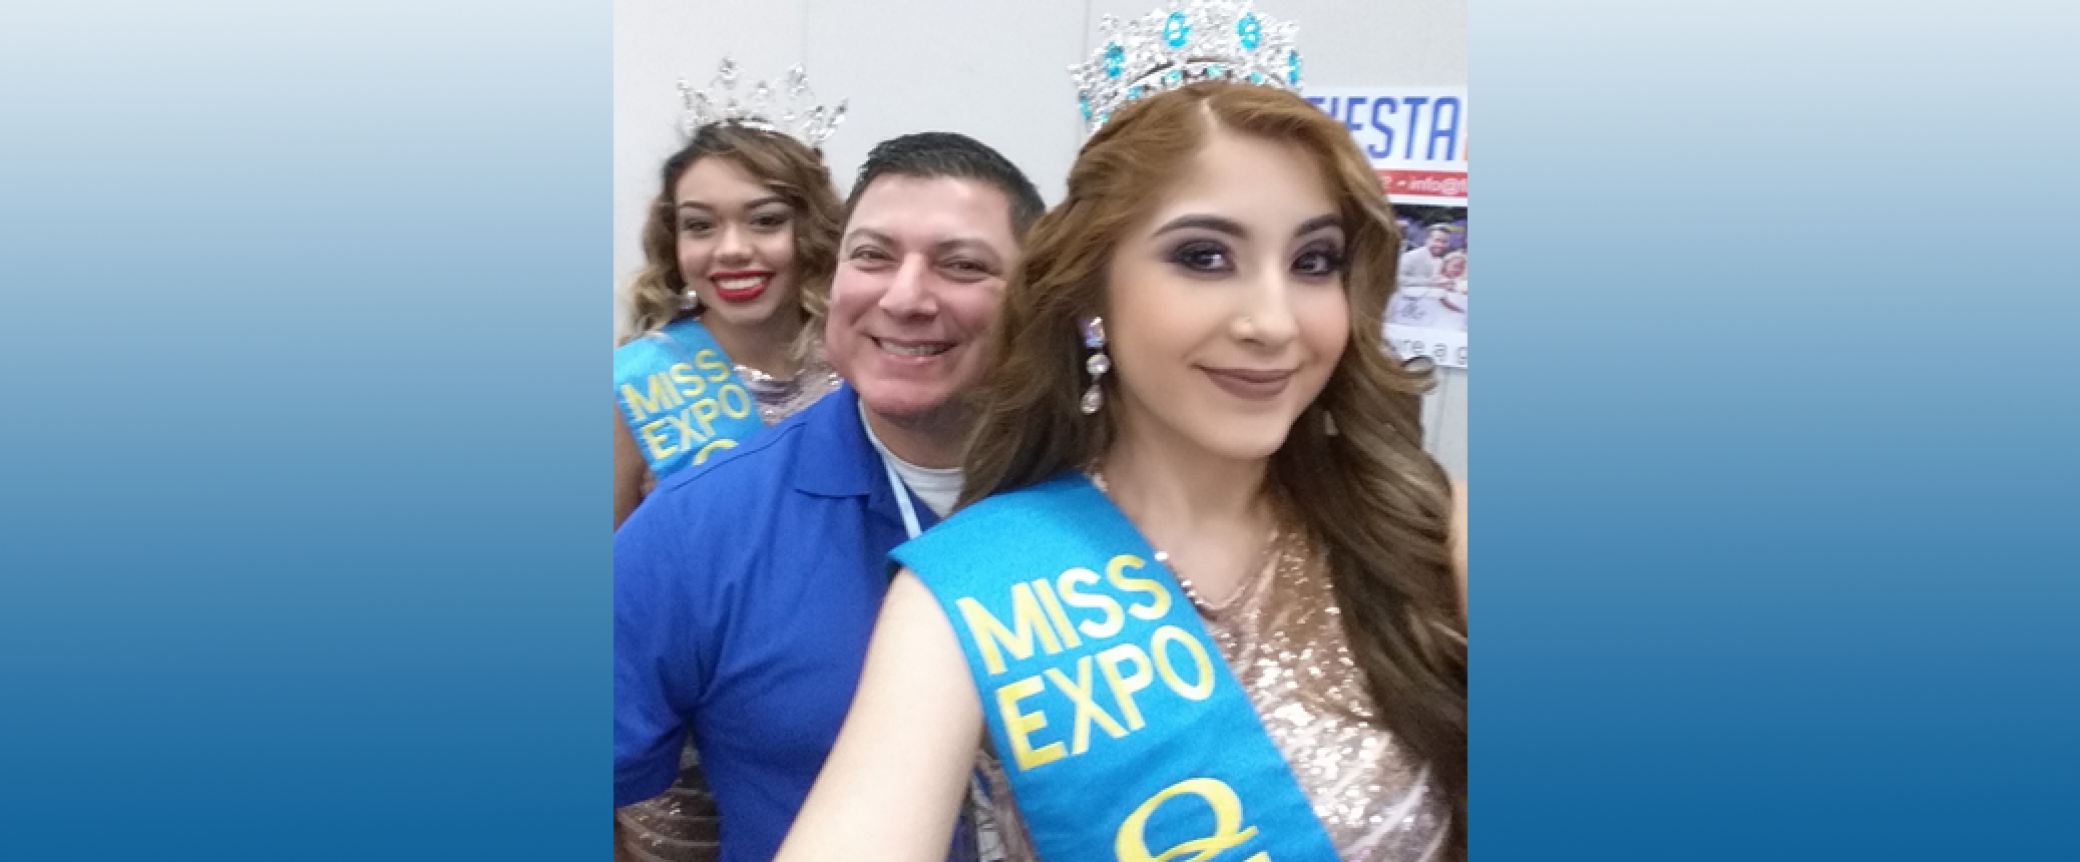 Quinceañera Expo 2016